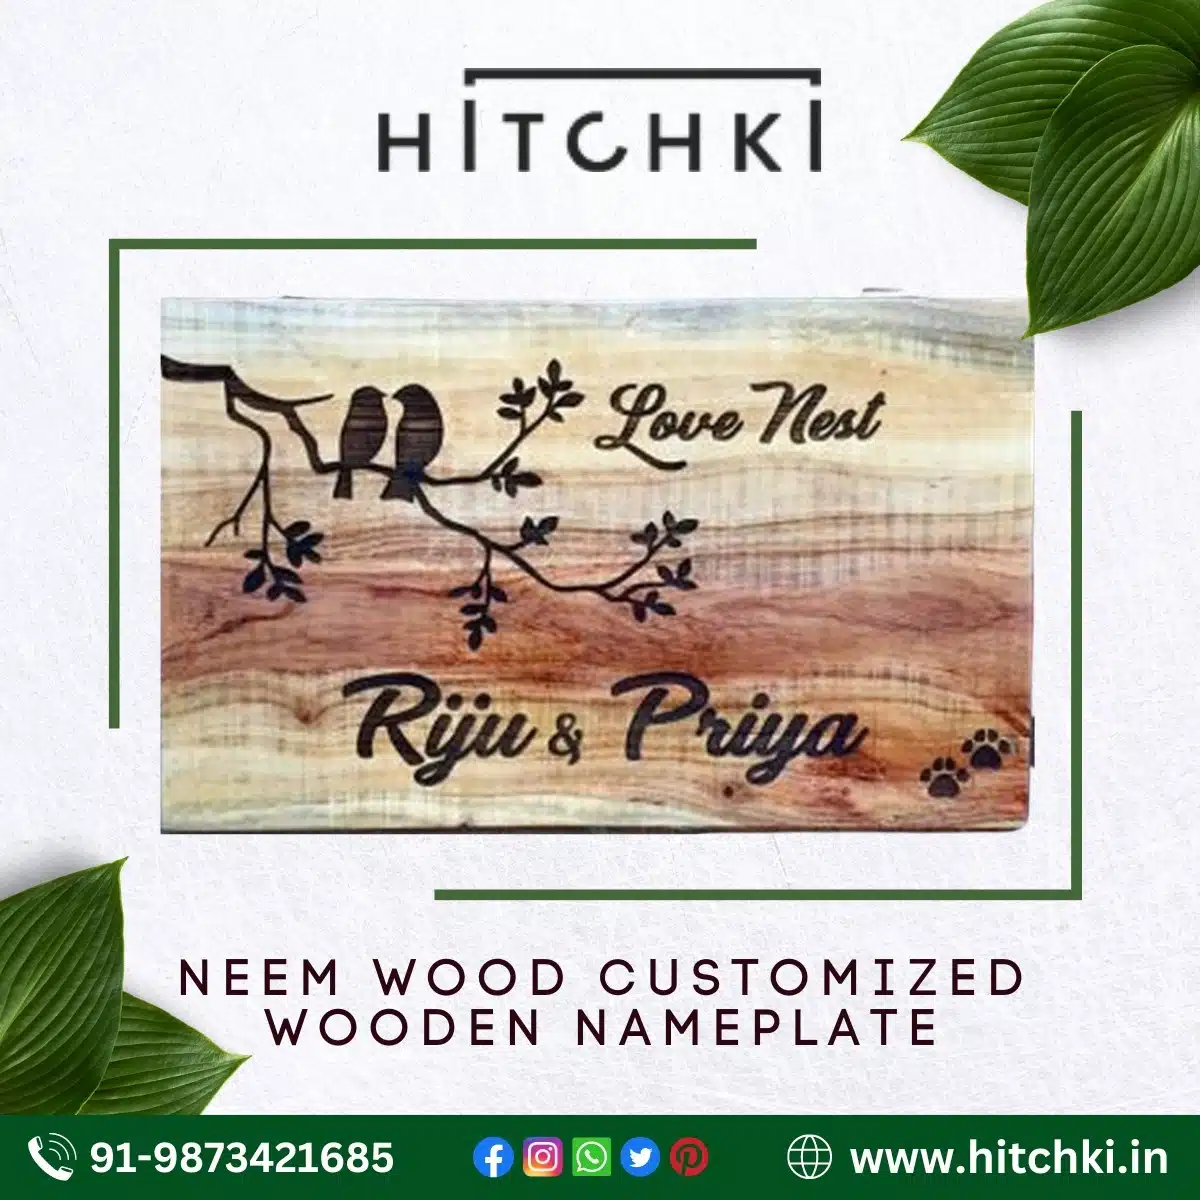 Neem Wood Wooden Nameplate Customized Hitchki